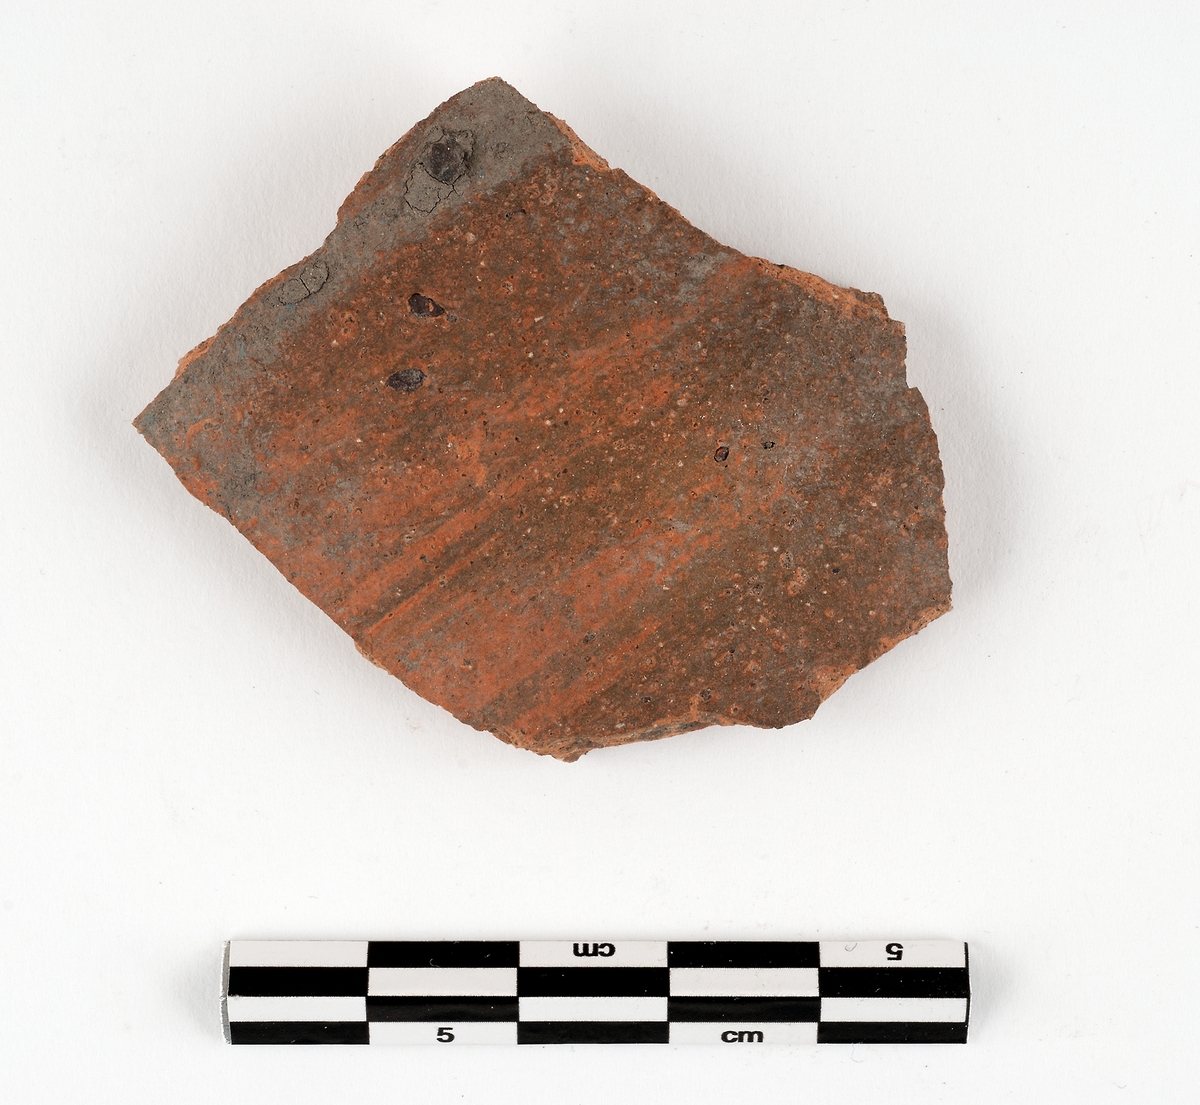 Del av kärl. Keramik. Nästan stengods (C1). Kanna. Orange utan engobe. Datering: cirka 1250-1350. Rhenländsk import.